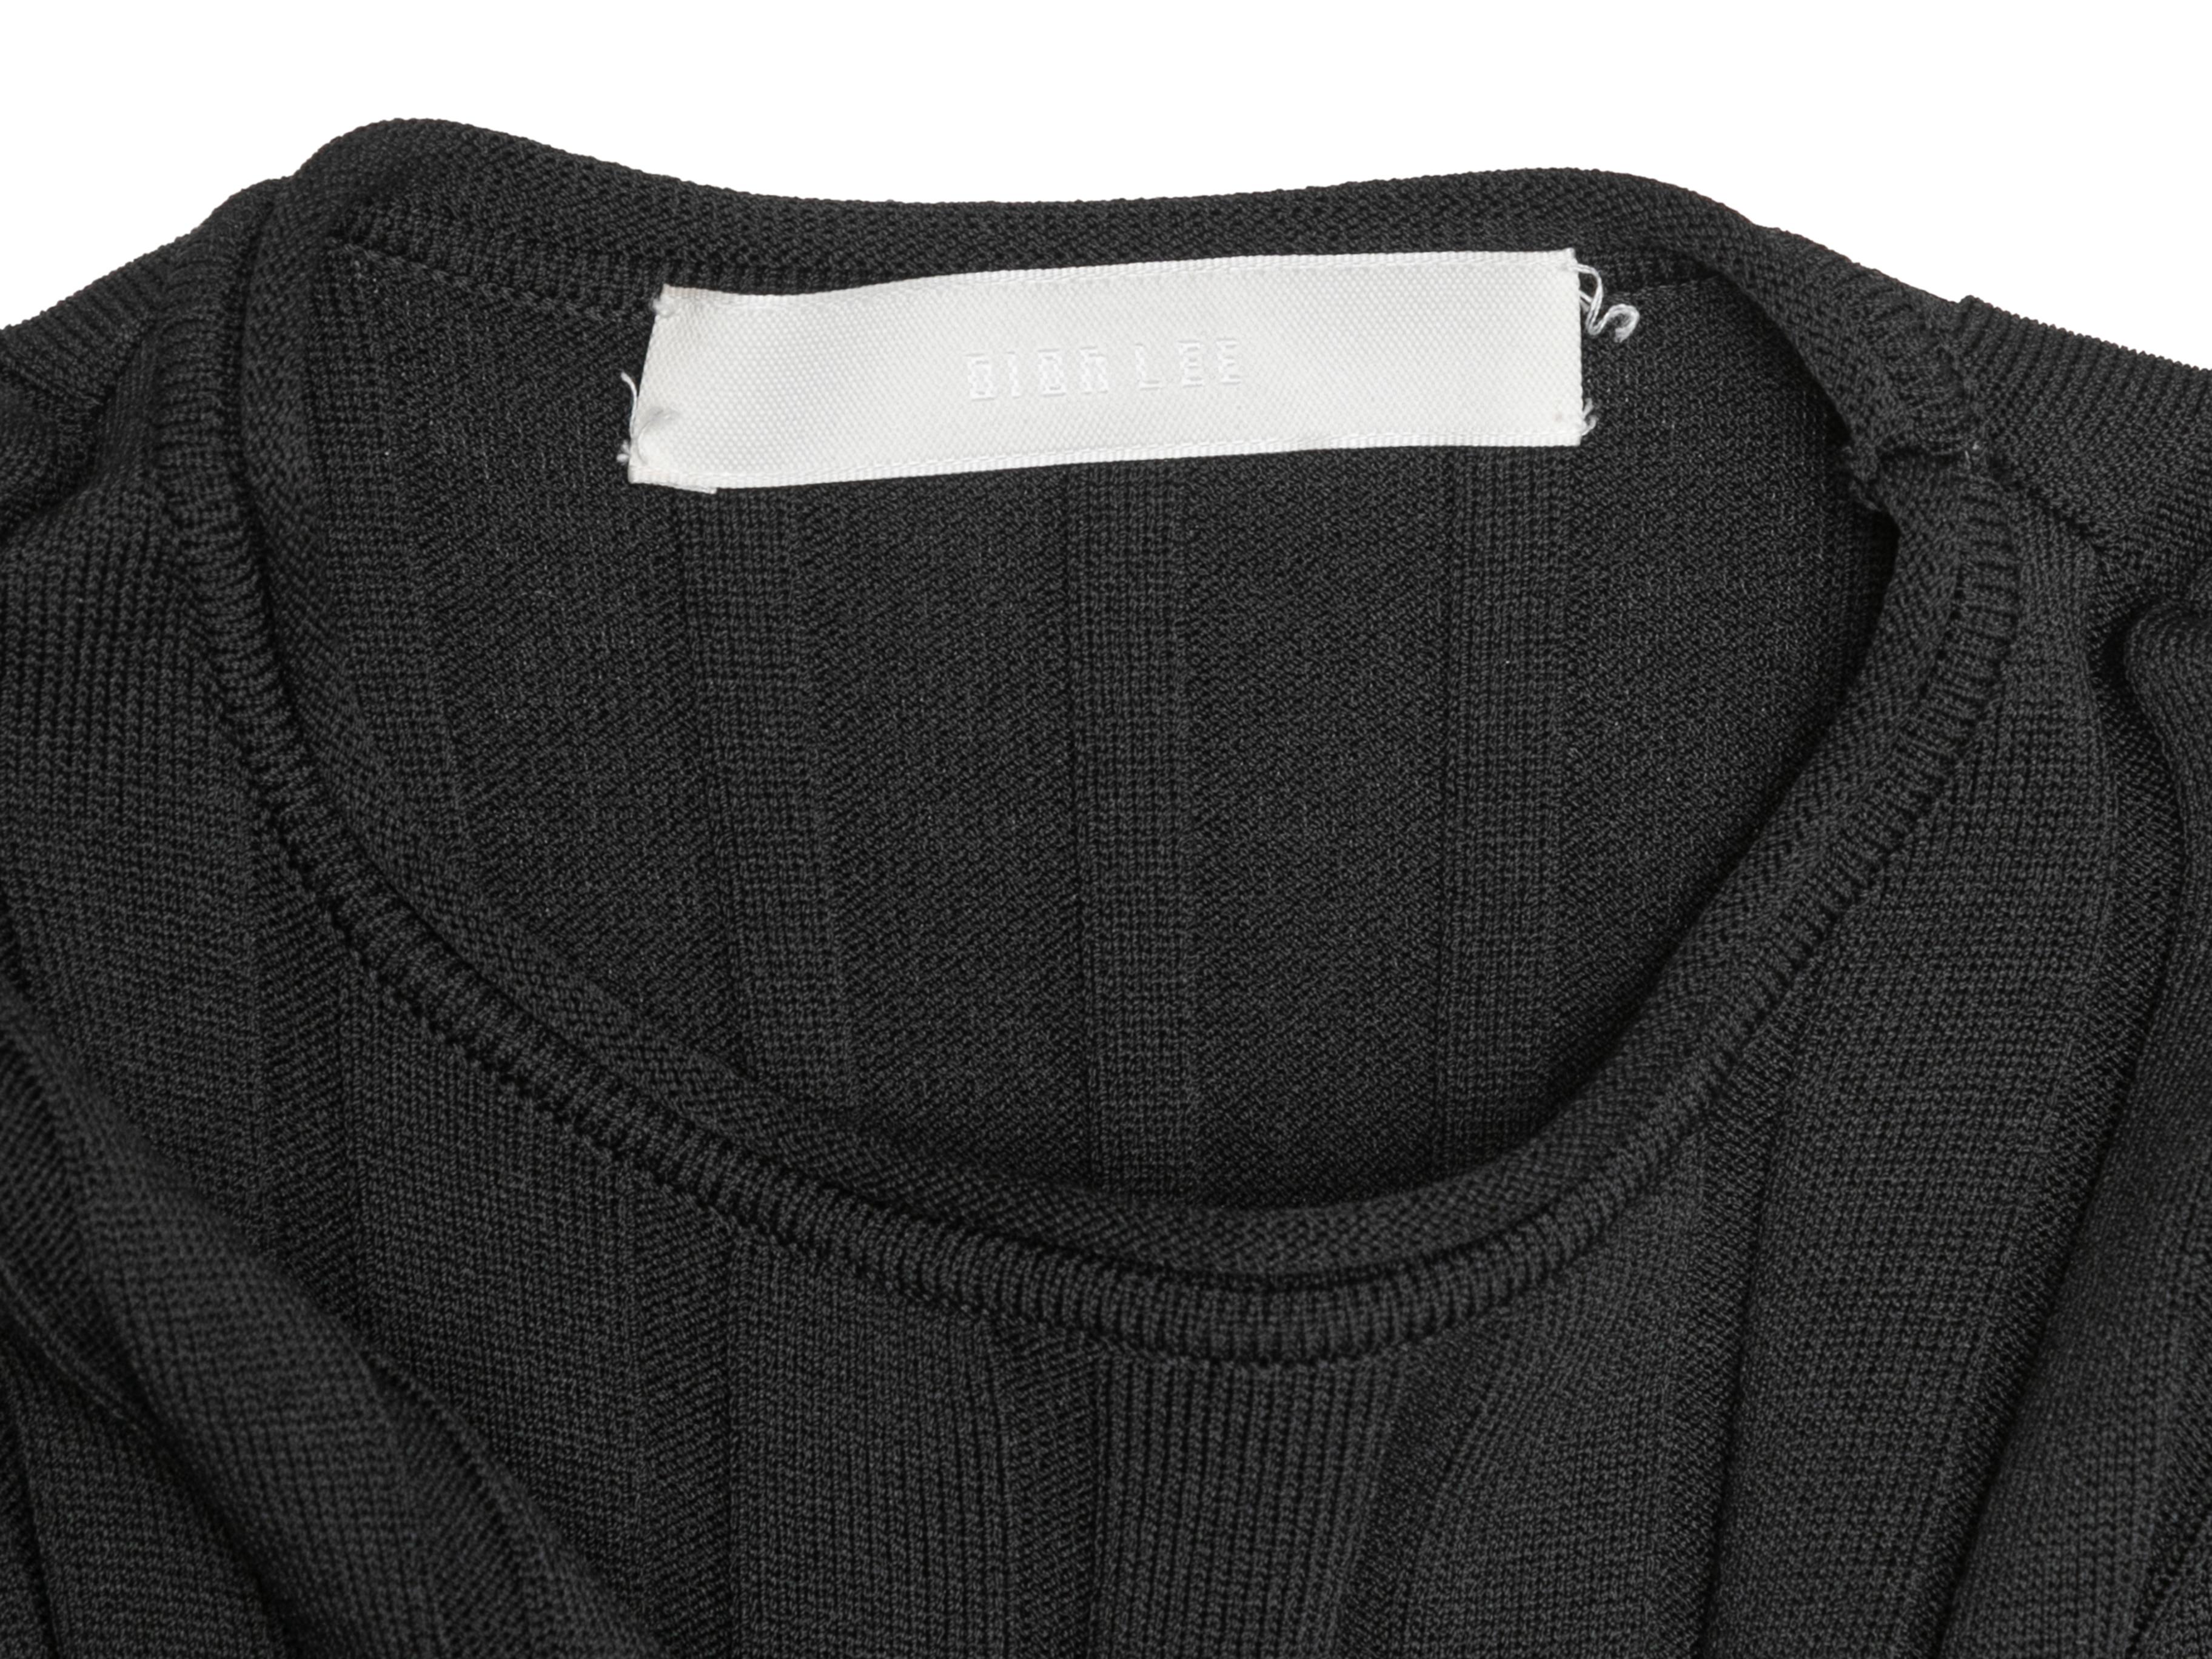 Black Dion Lee Rib Knit Maxi Dress Size US 2 3